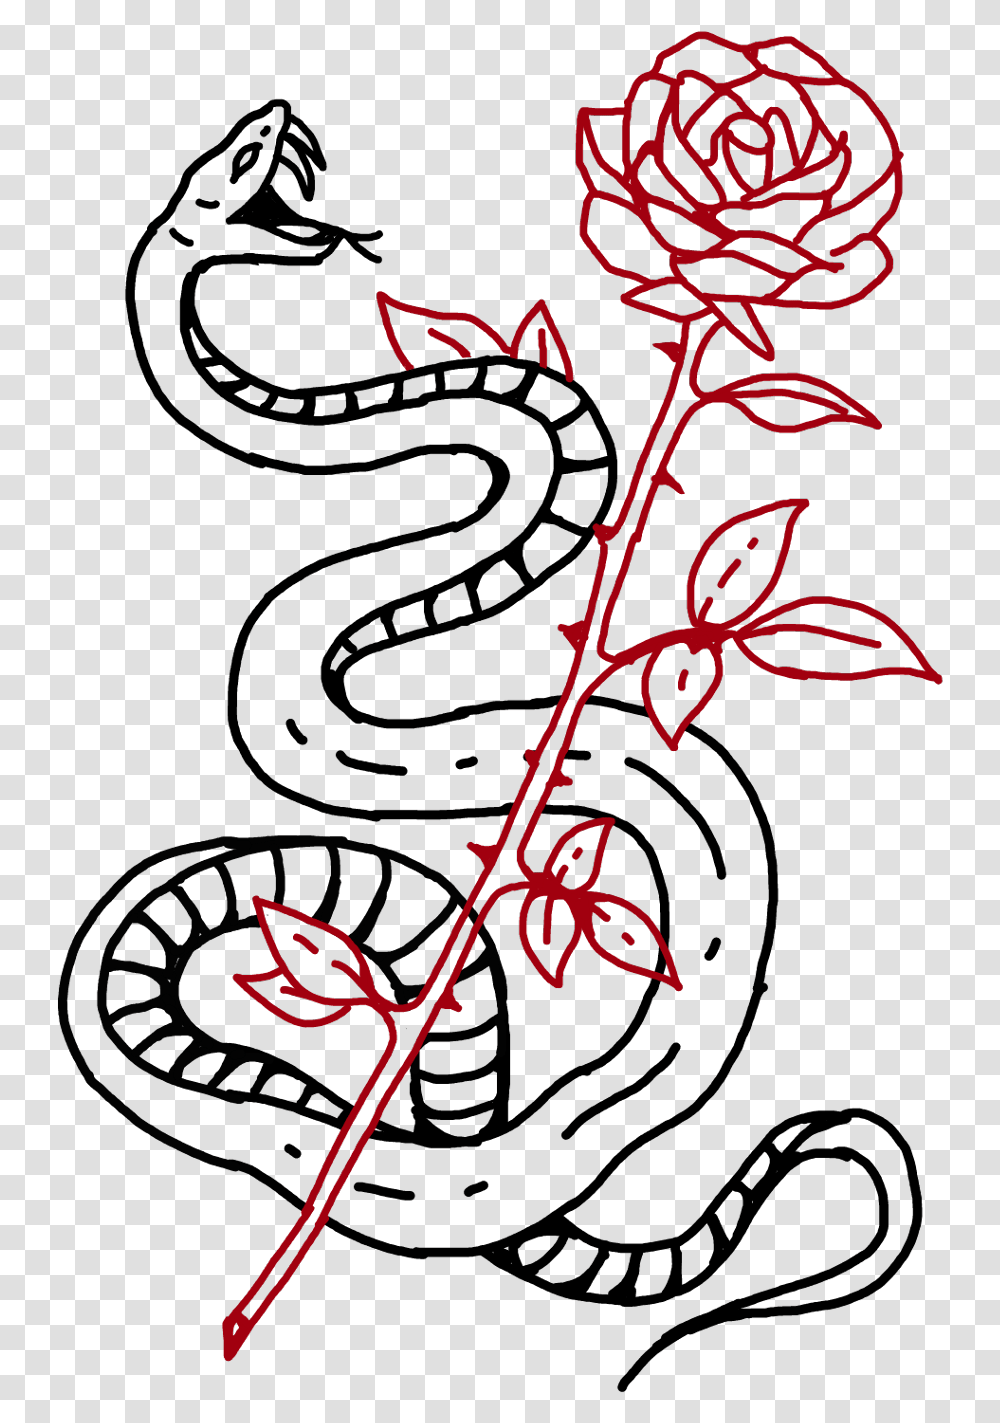 Serpiente Snake Rosa Roses Rose Tumblr Tatuaje Tattoo Snake Tattoo, Plant Transparent Png